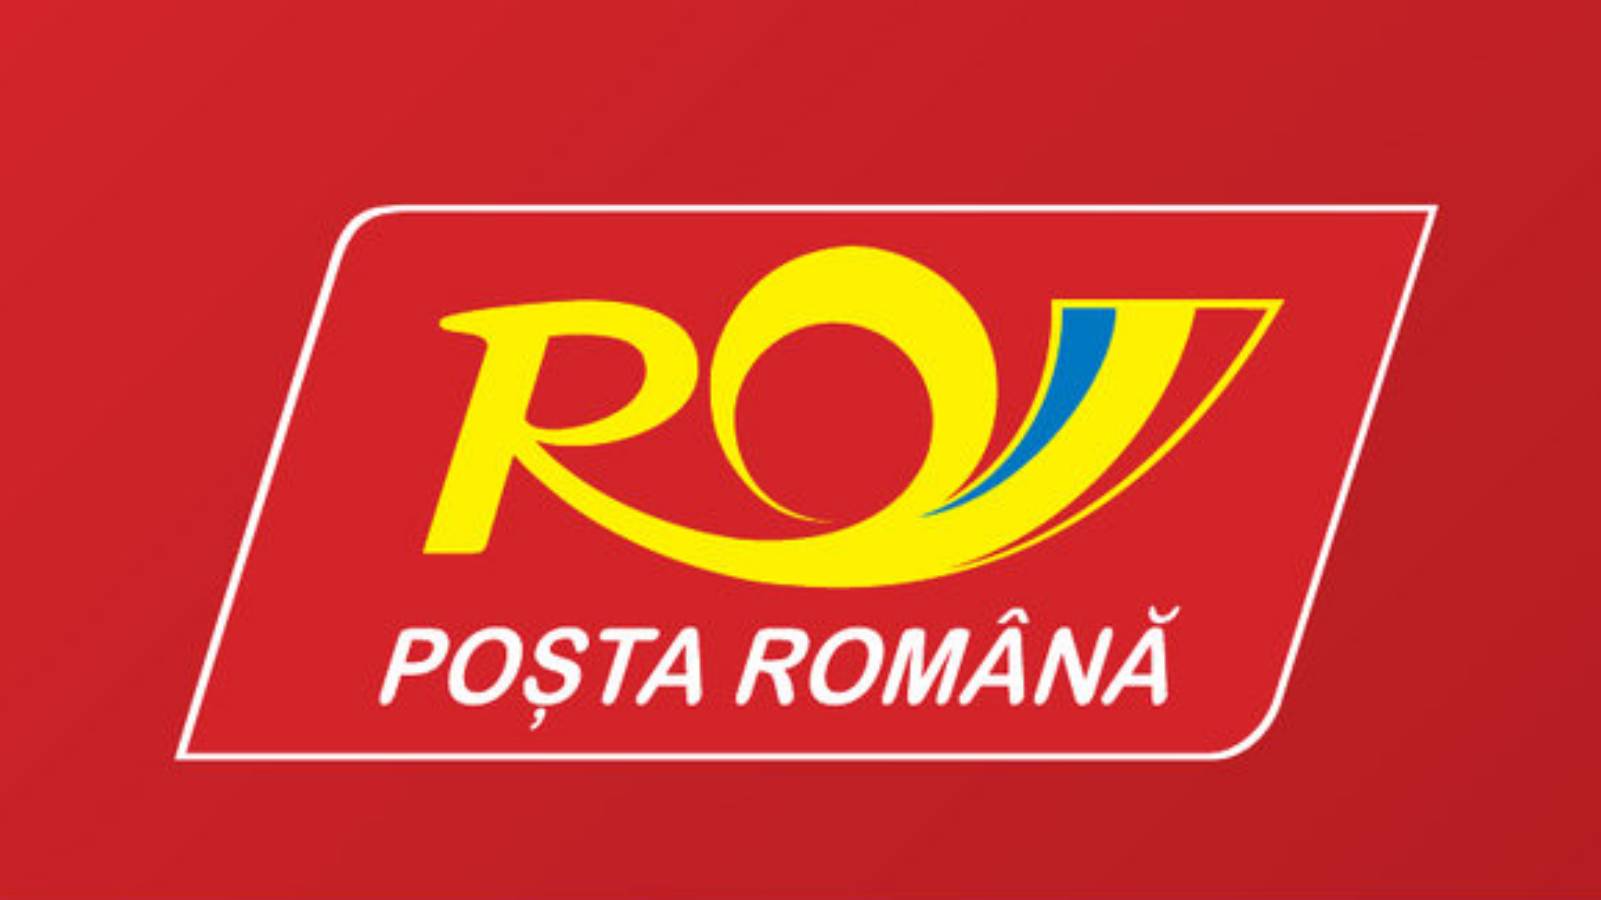 Postkarten der Rumänischen Post